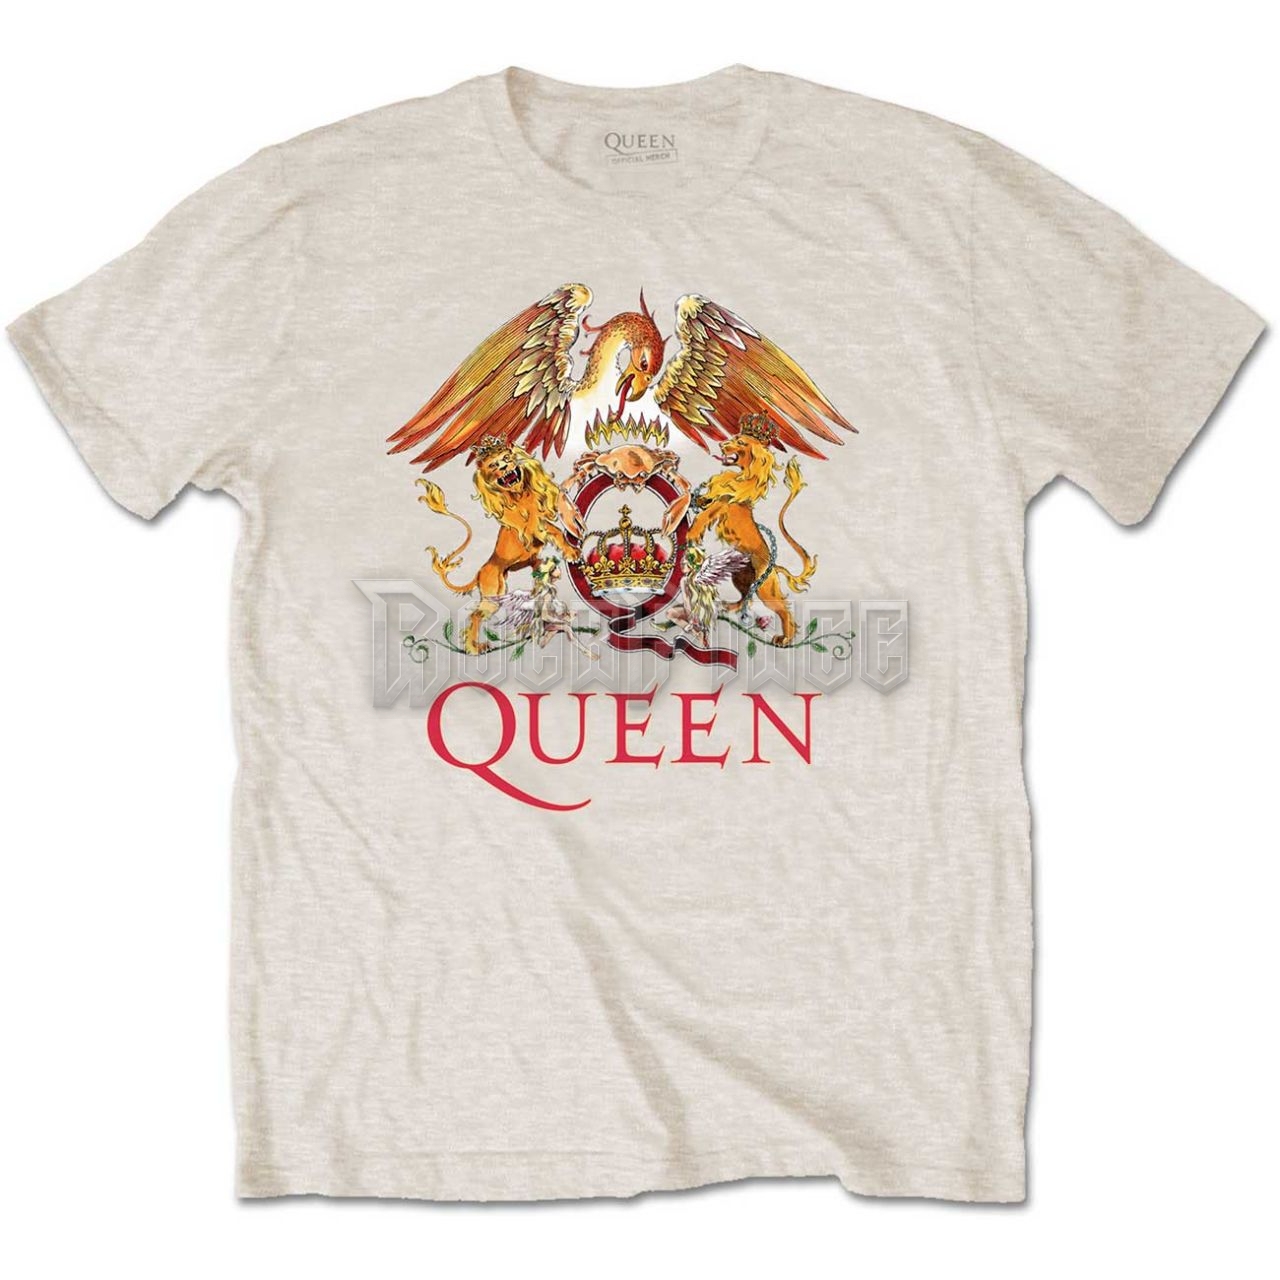 Queen - Classic Crest - unisex póló - QUTS03MS